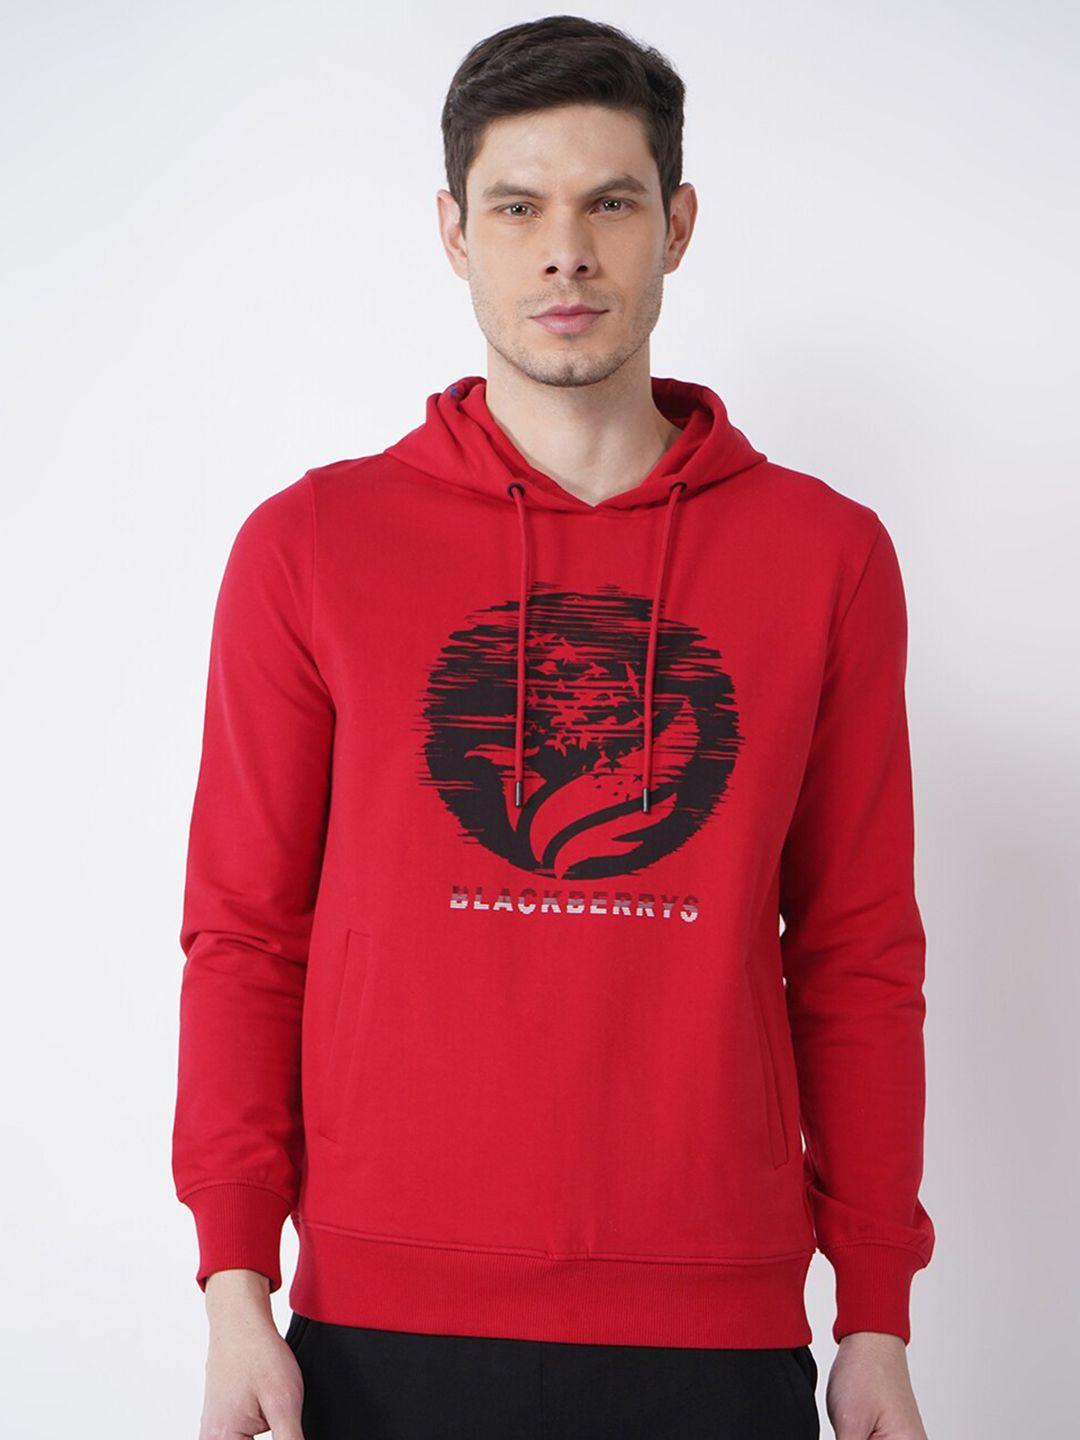 blackberrys-men-red-printed-sweatshirt